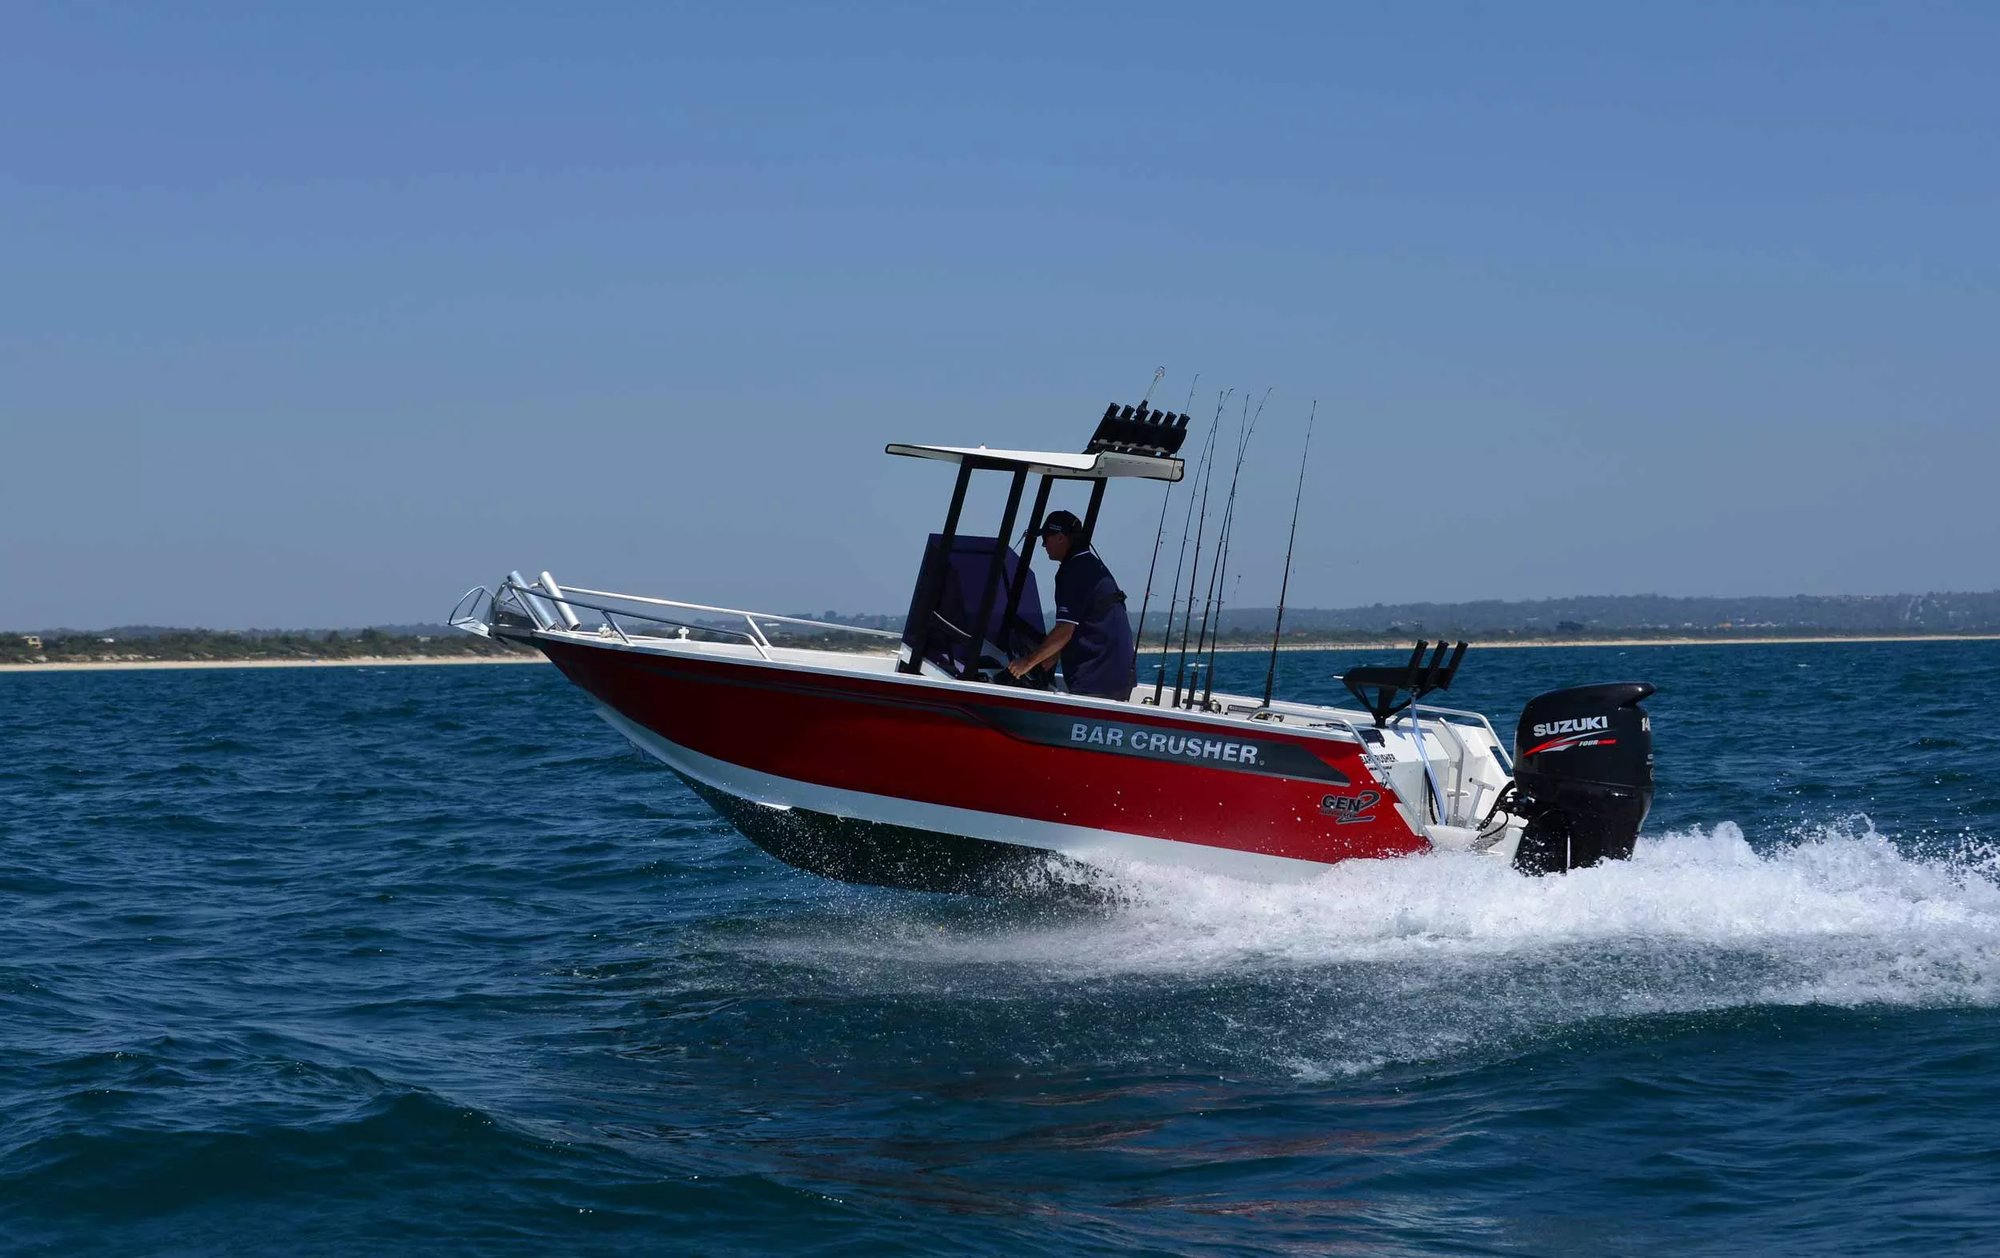 models-bar-crusher-615wr-1-plate-aluminium-fishing-boat